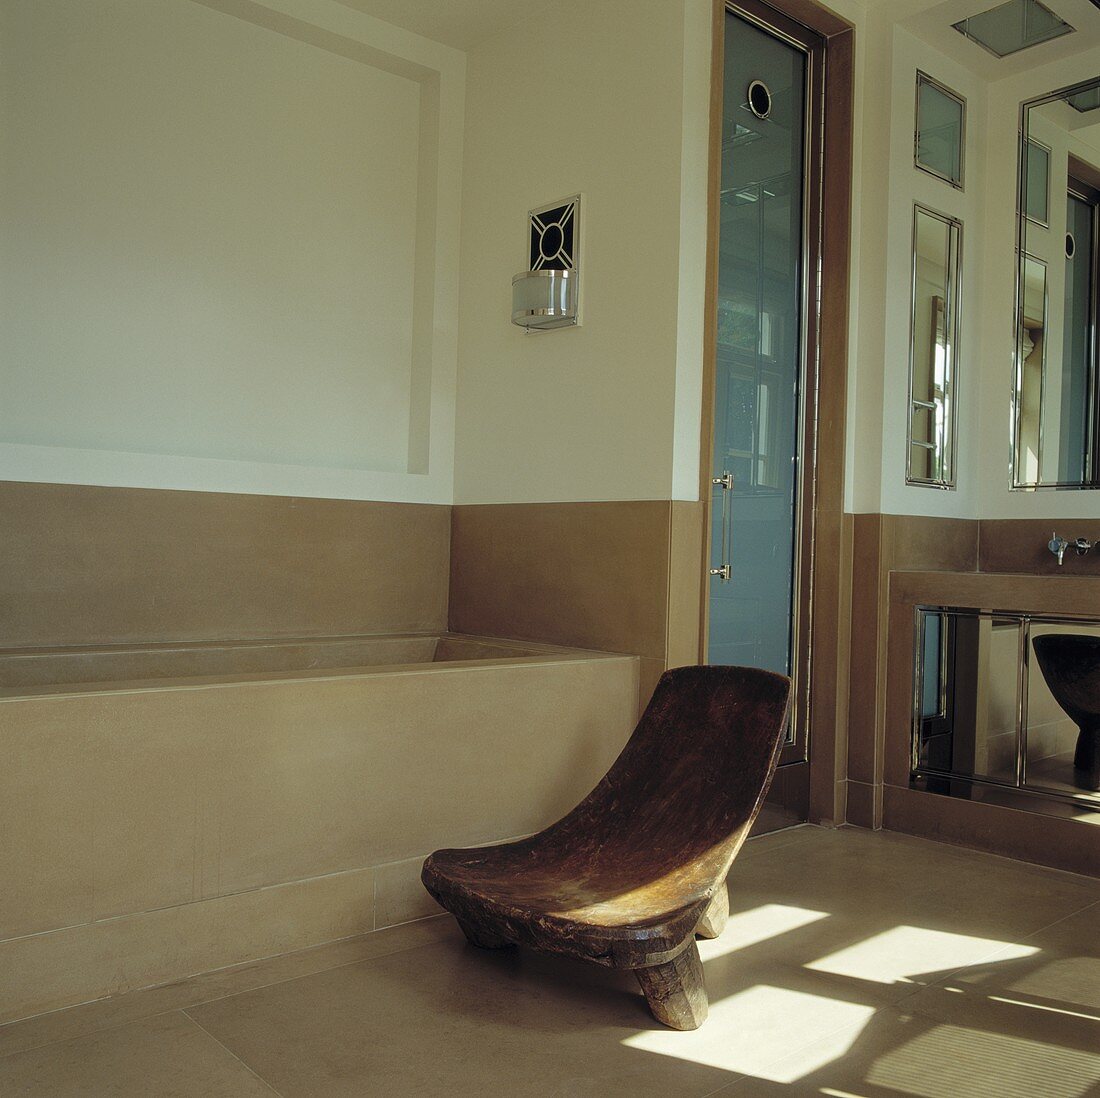 Rustikaler Holzstuhl vor der Badewanne in einem modernen Badezimmer